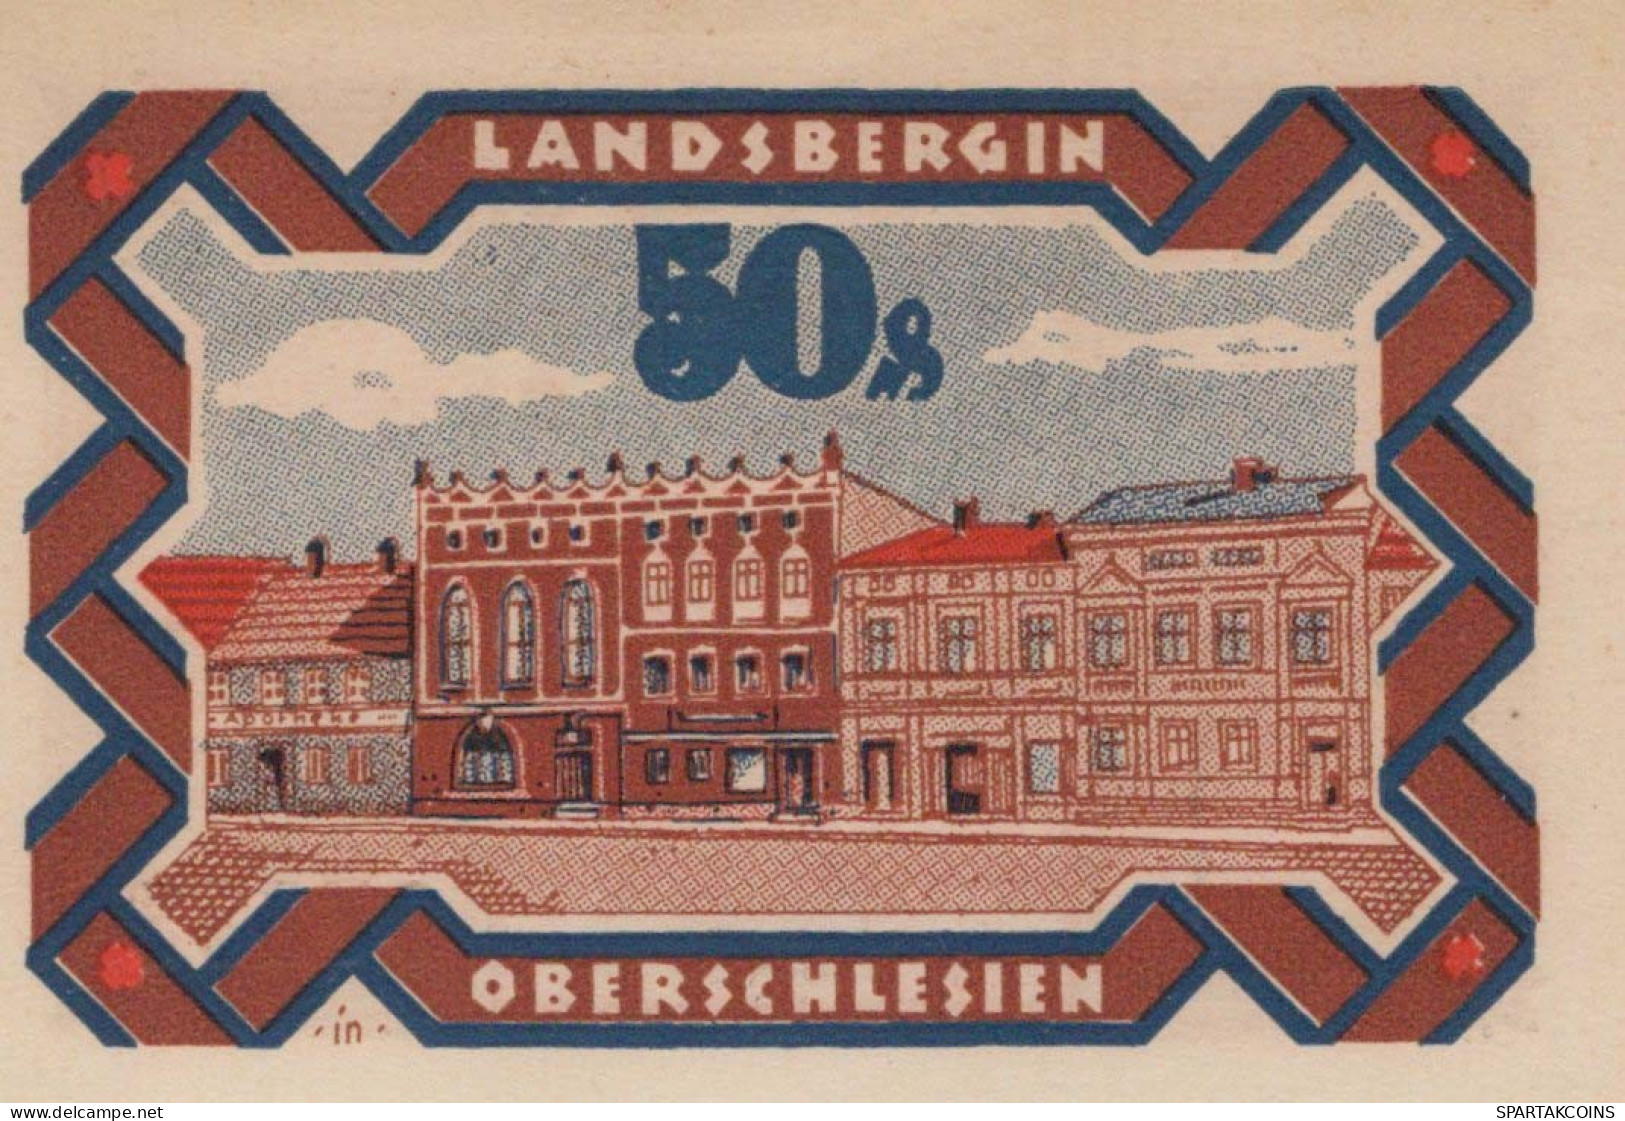 50 PFENNIG 1922 Stadt LANDSBERG OBERSCHLESIEN UNC DEUTSCHLAND #PB929 - [11] Local Banknote Issues